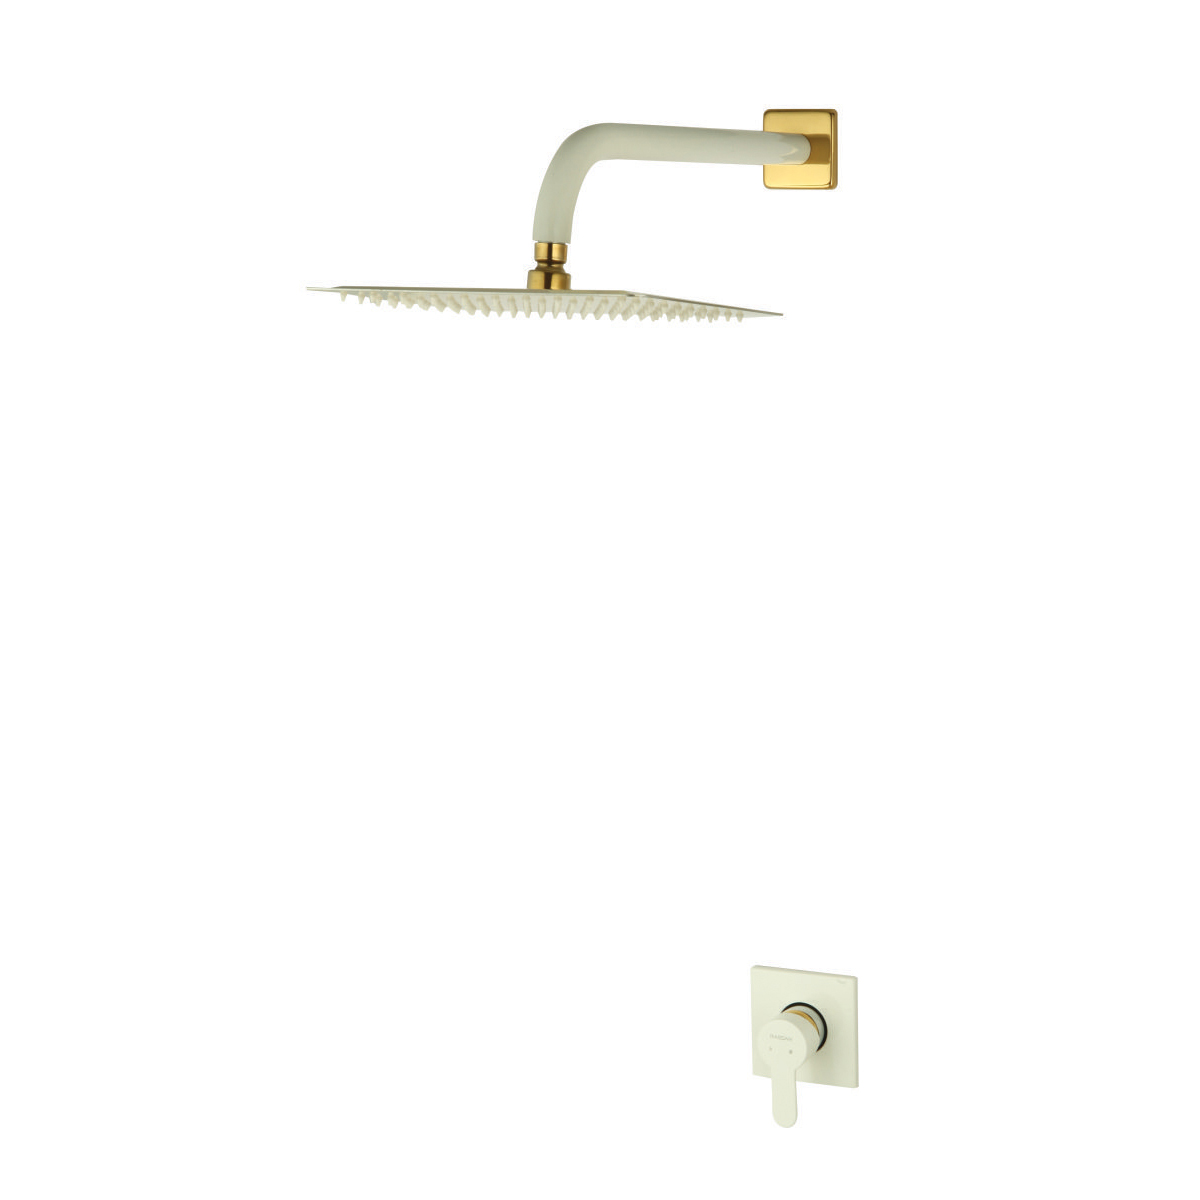 شیر حمام و مکانیزم توکار ویوات راسان مدل فلت کلاس (3) سفید طلایی